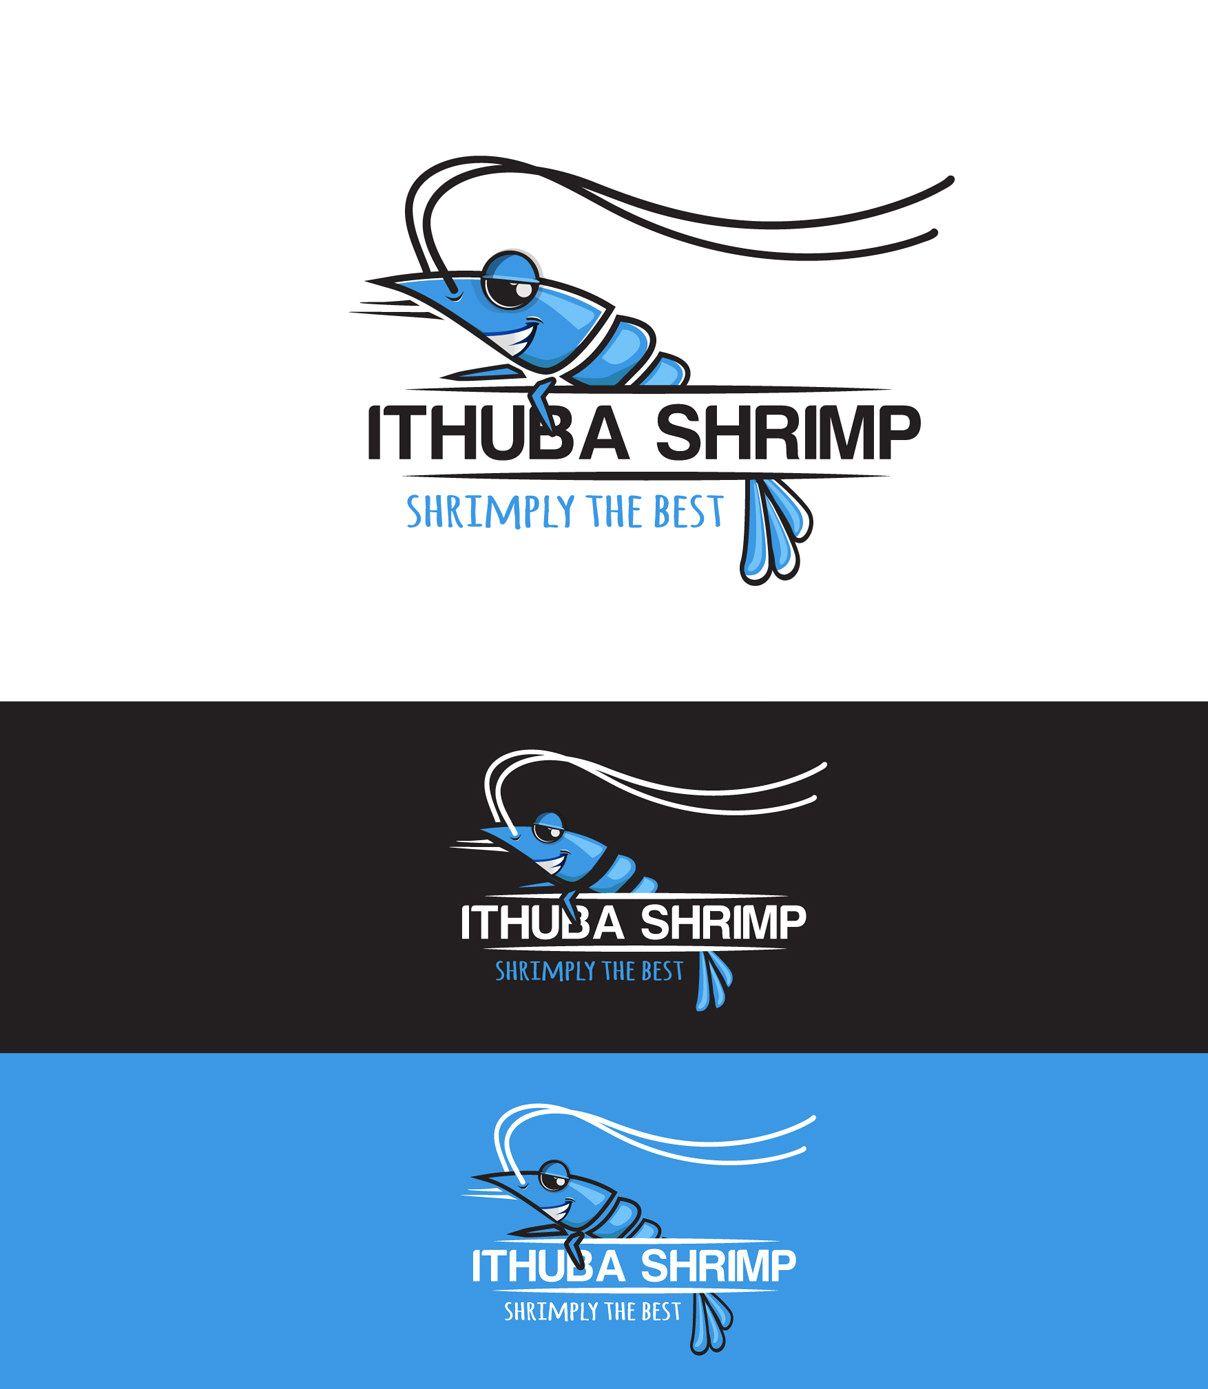 Shrimp Logo - Ithuba Shrimp. Milica Bogdanic Designs